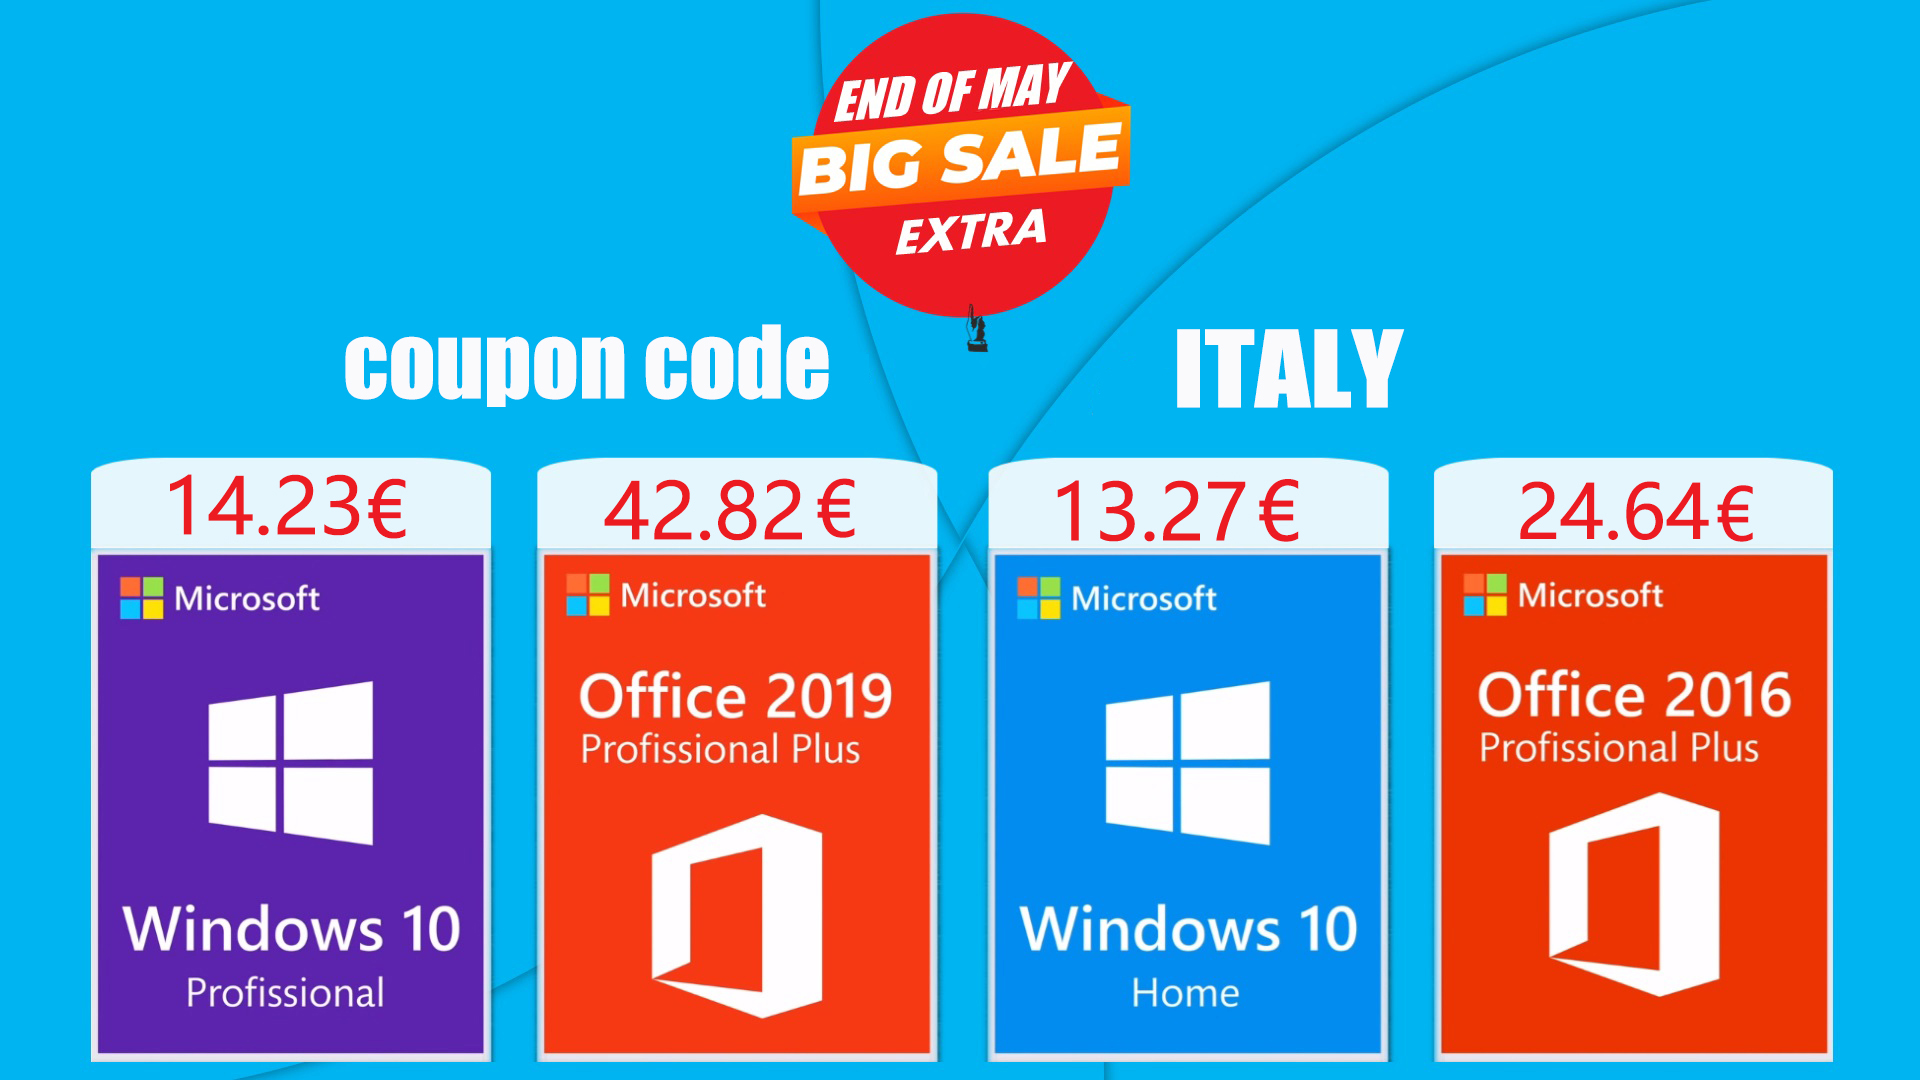 Licenze a basso costo per tutti: Windows a 13,27€ e Office a 24,64€  entrambi a vita